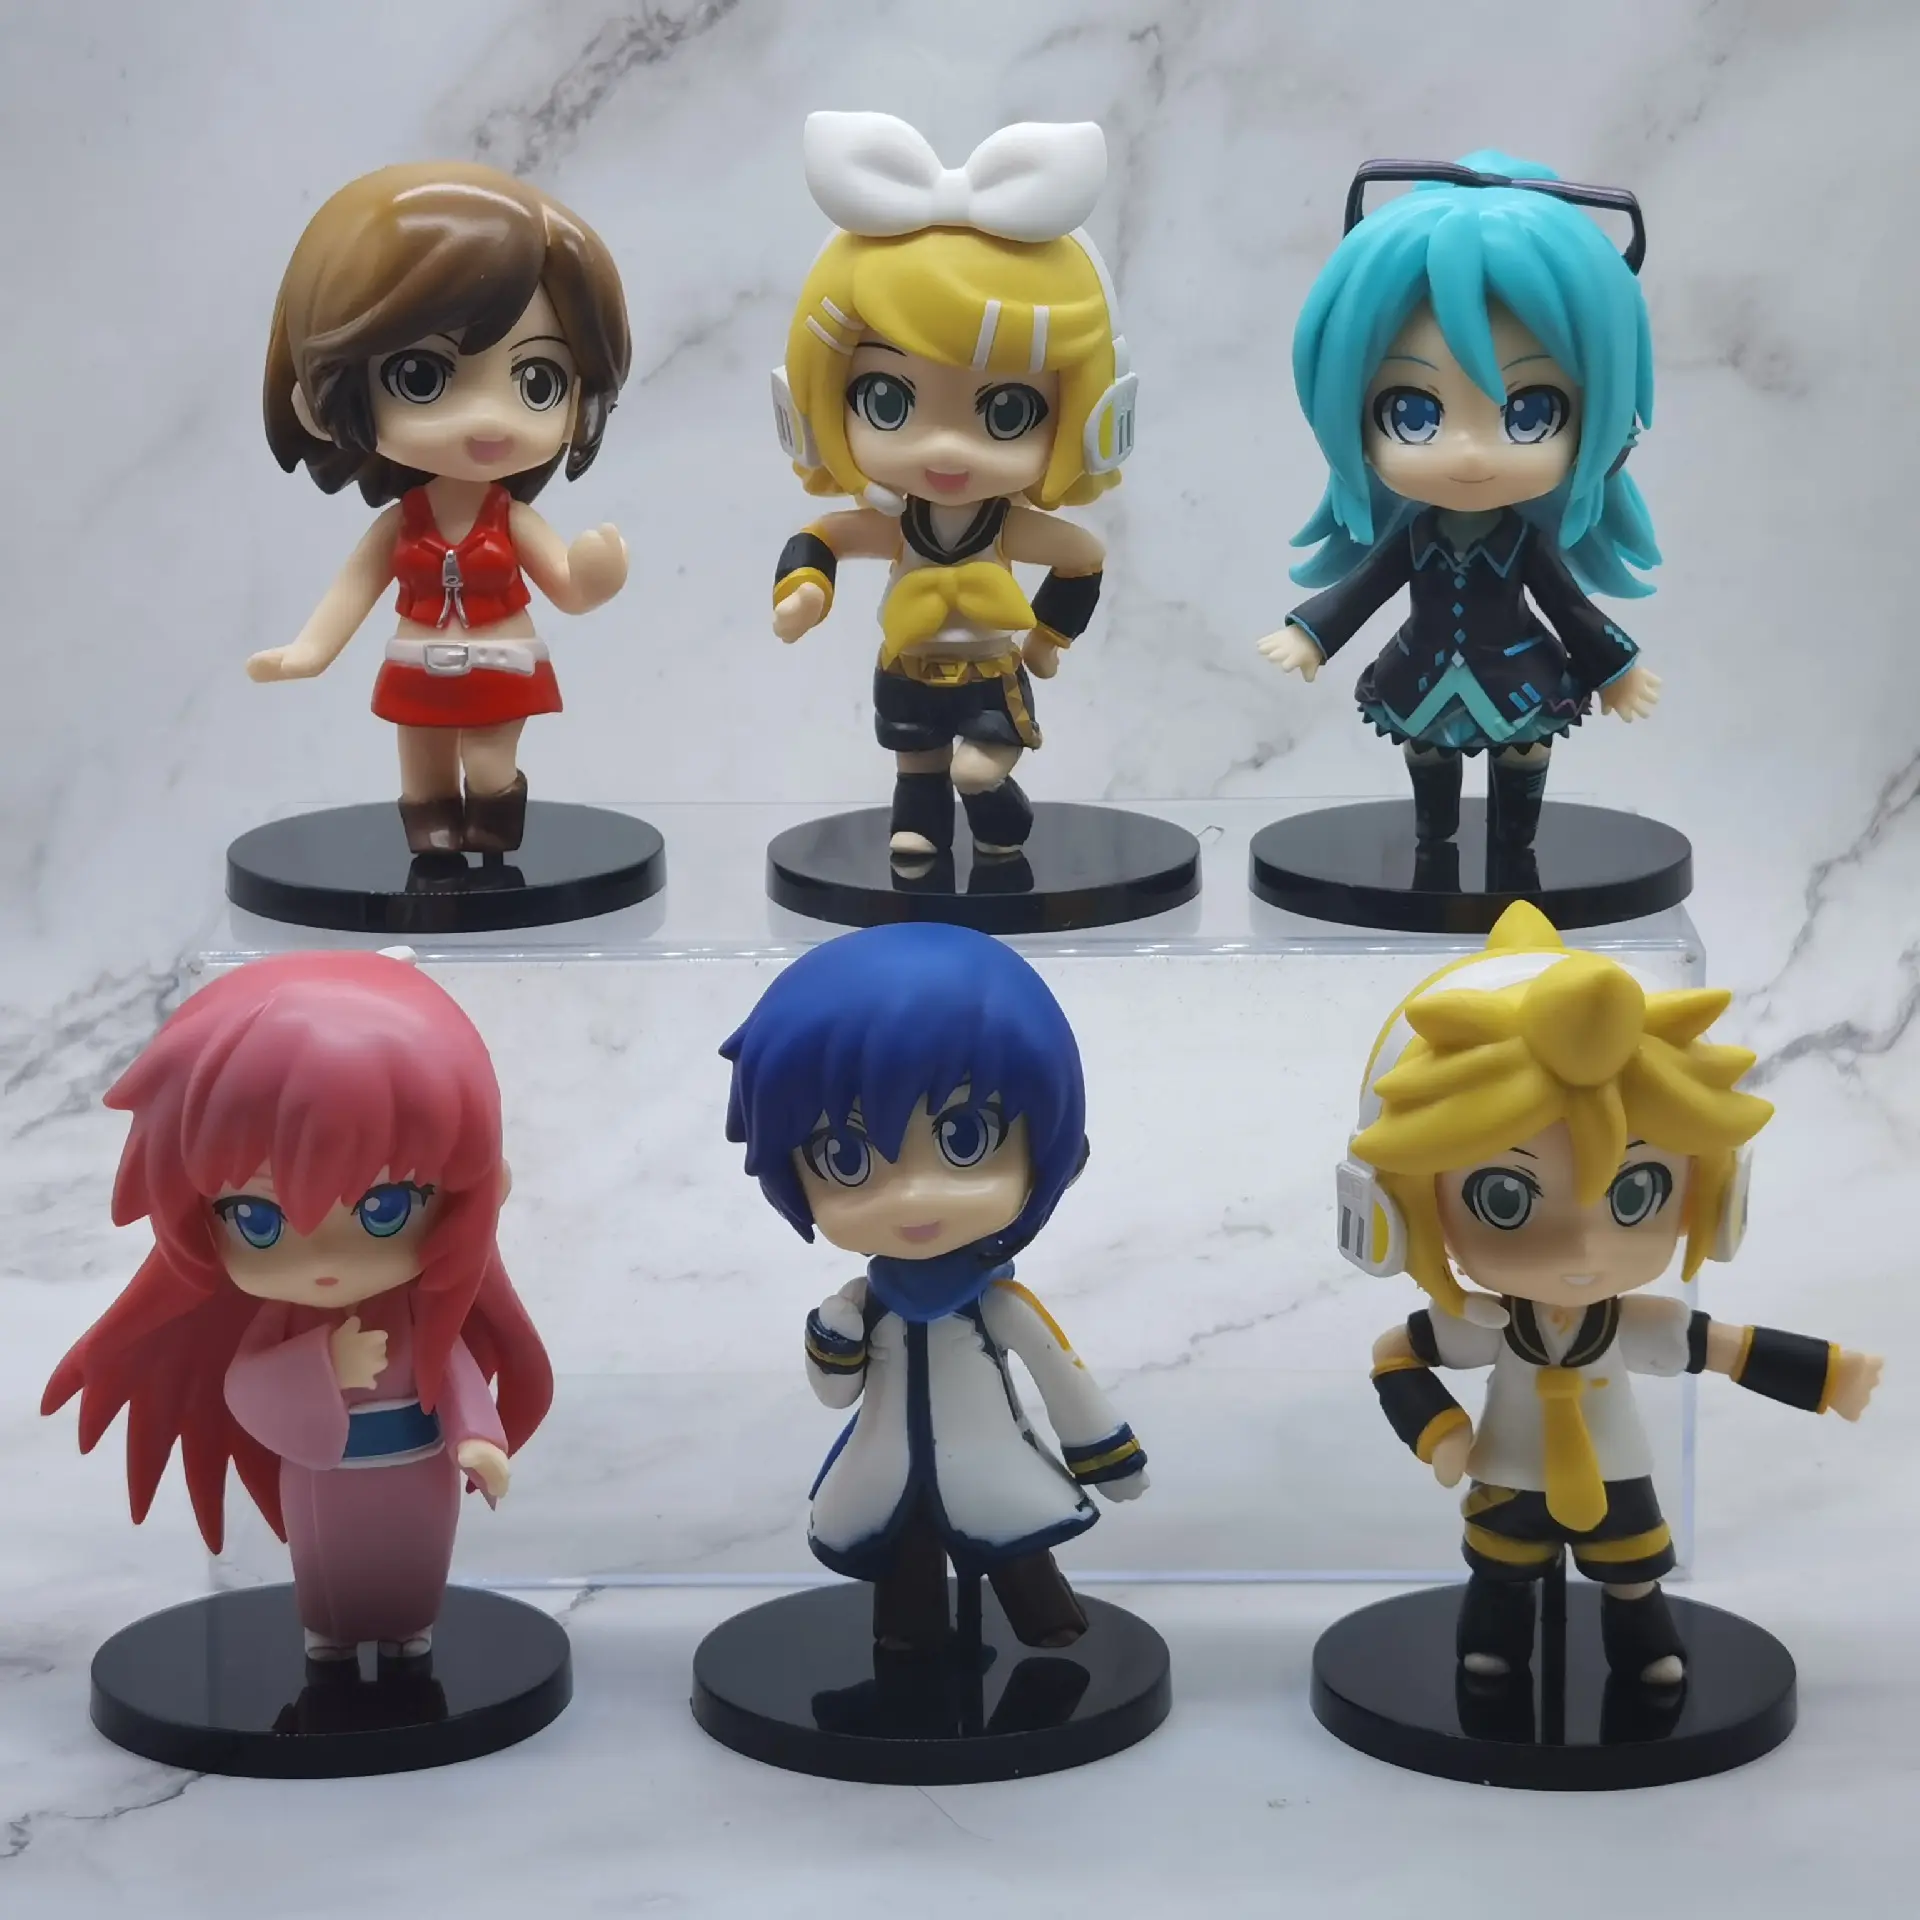 Nuovi personaggi Anime ragazzi giochi di famiglia decorazione regali carini giocattoli per bambini Action Figures ragazze Miku Anime Figures